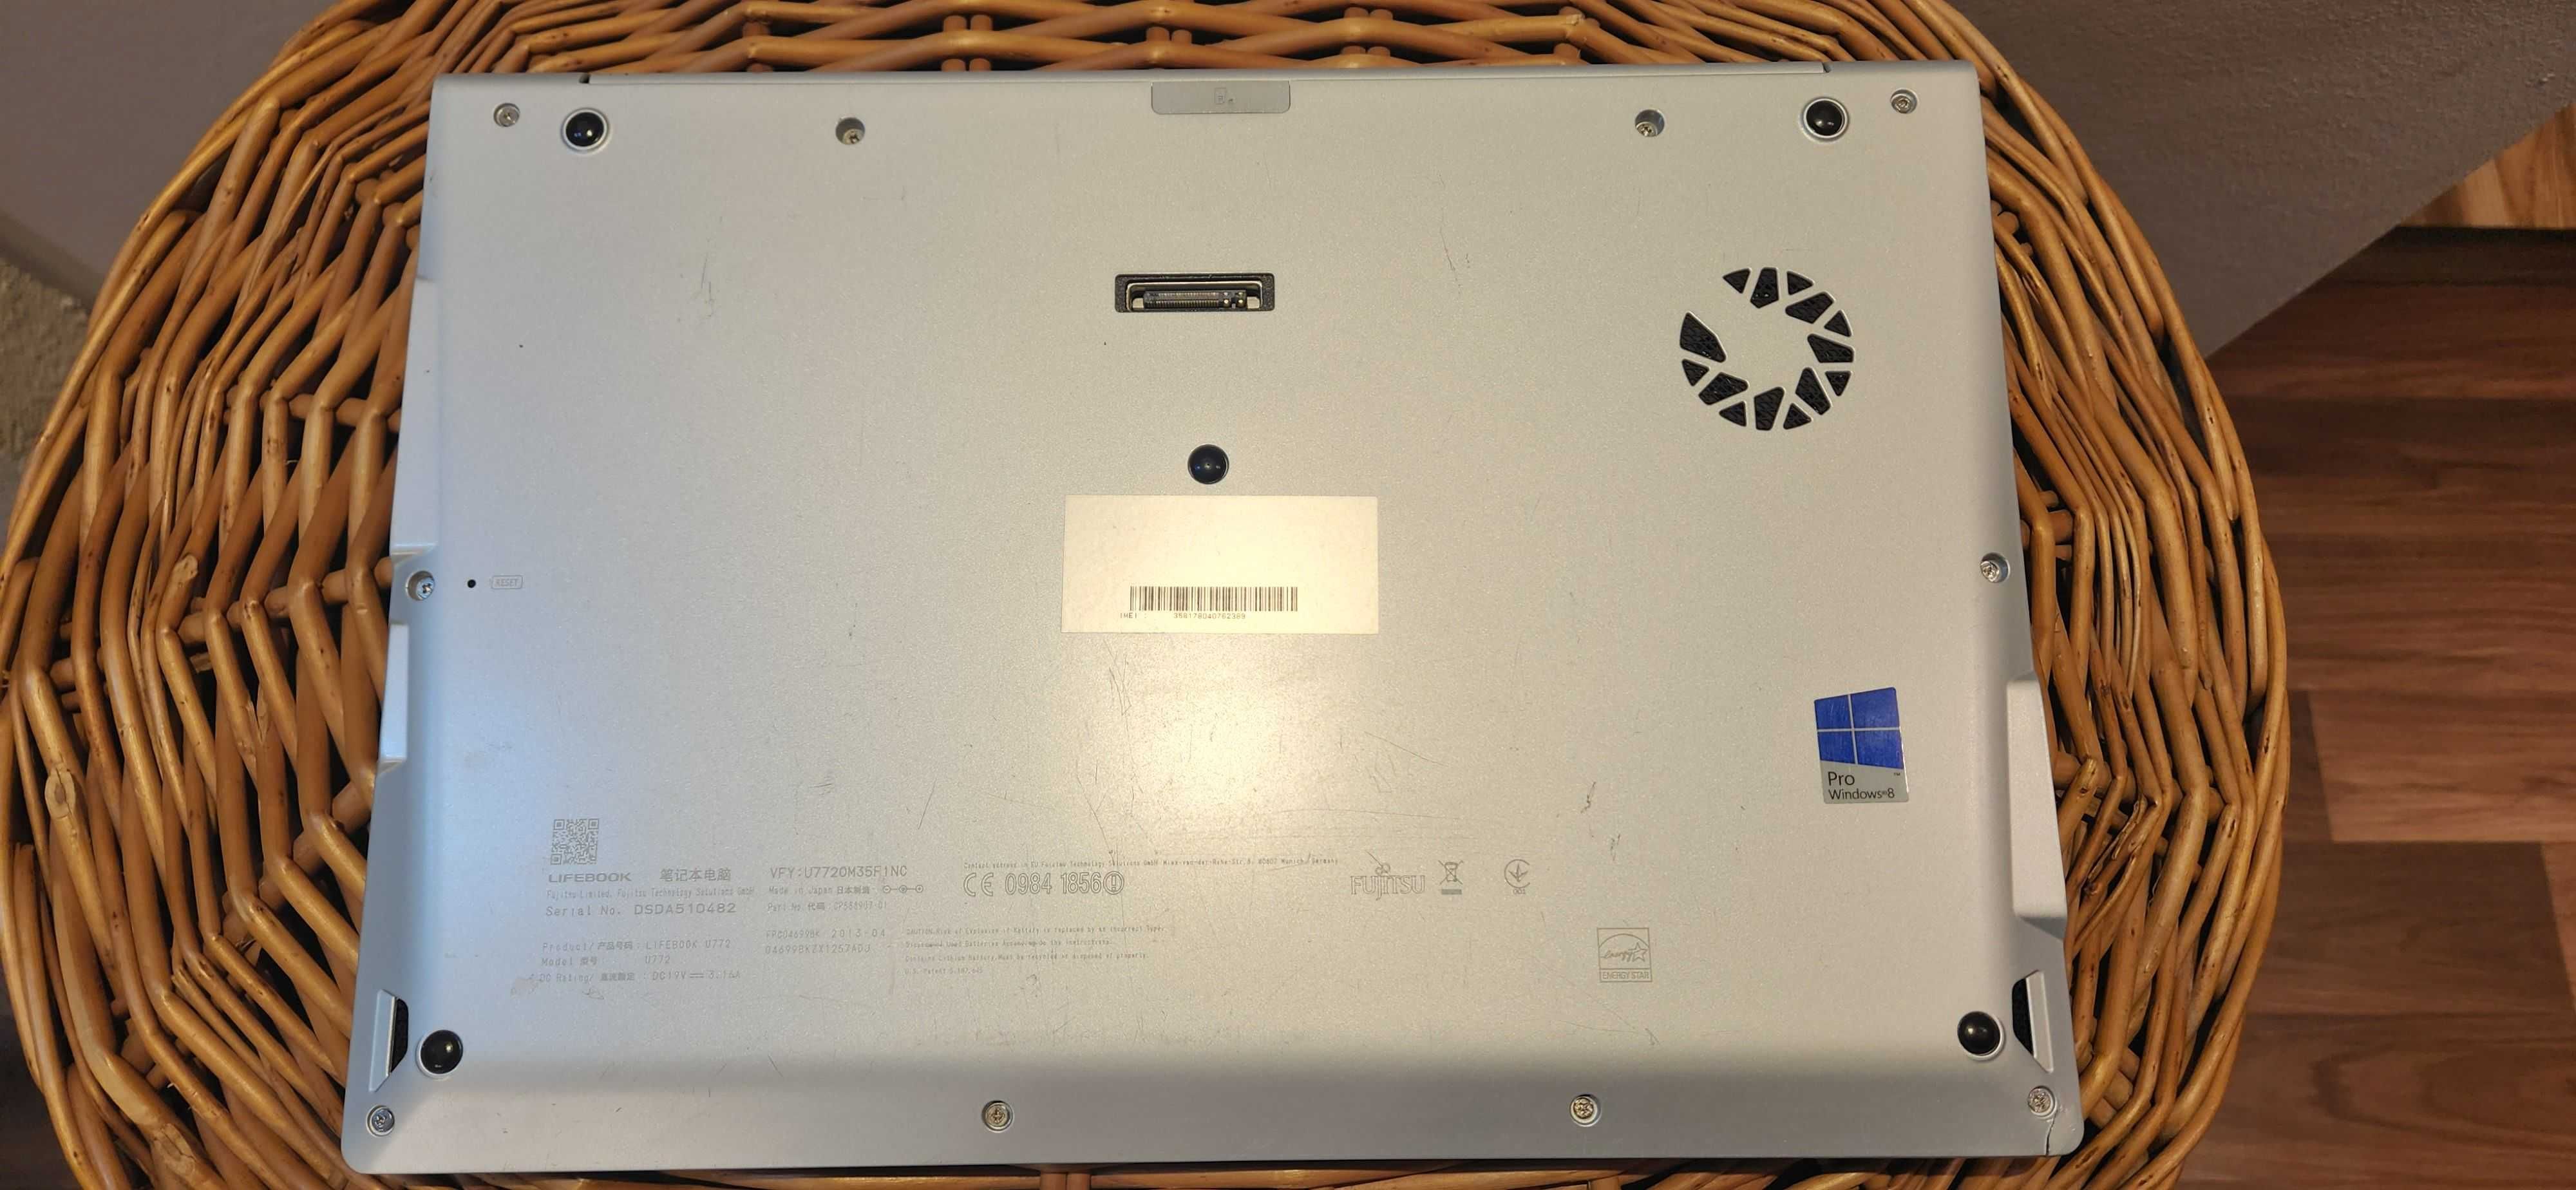 Fujitsu Lifebook U772 /14"/i5-3317u/4gb/240ssd/bateria 100%